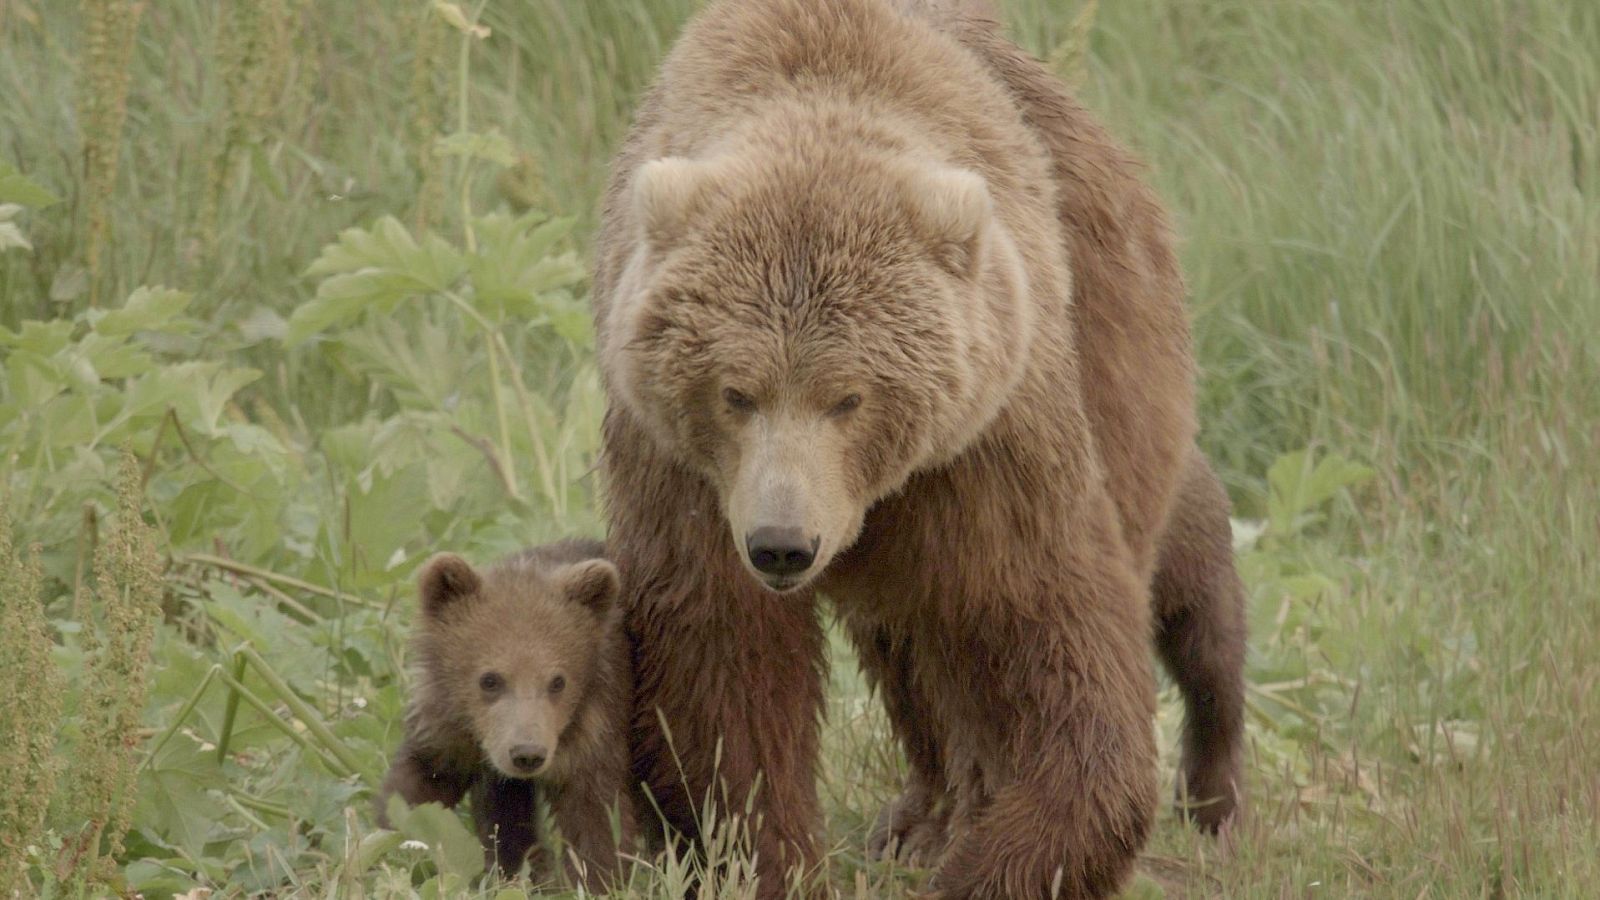 Somos documentales - Los osos gigantes de Alaska